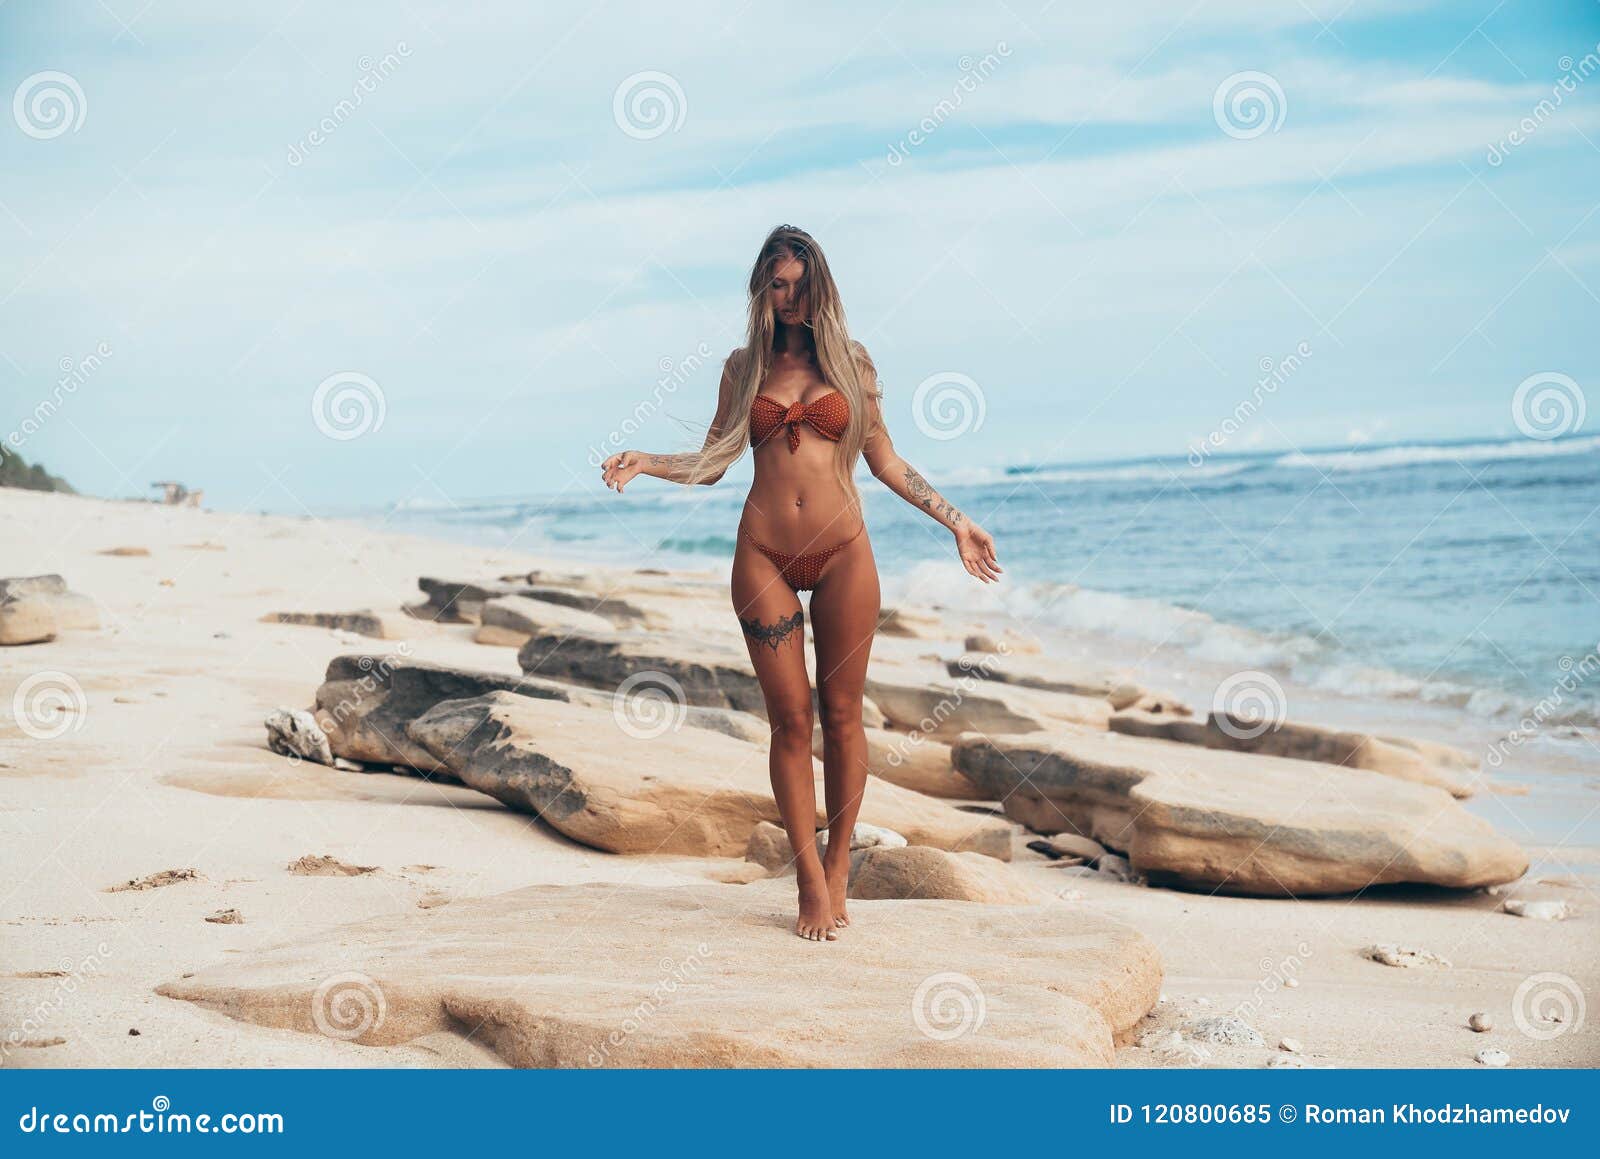 Argentina Nude Beaches